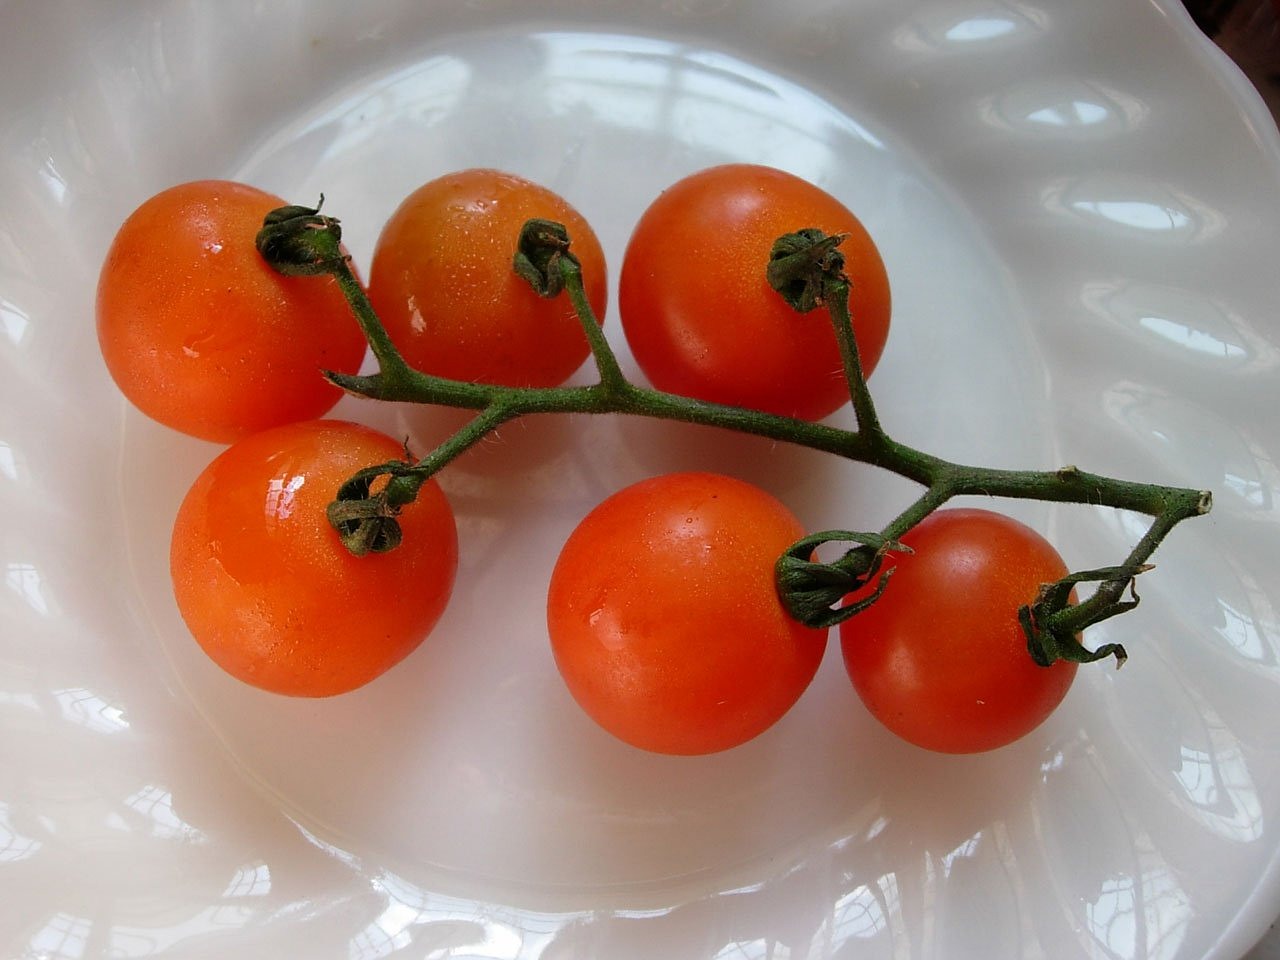 Descubriendo el tomate racimo: ¿qué es y para qué sirve?